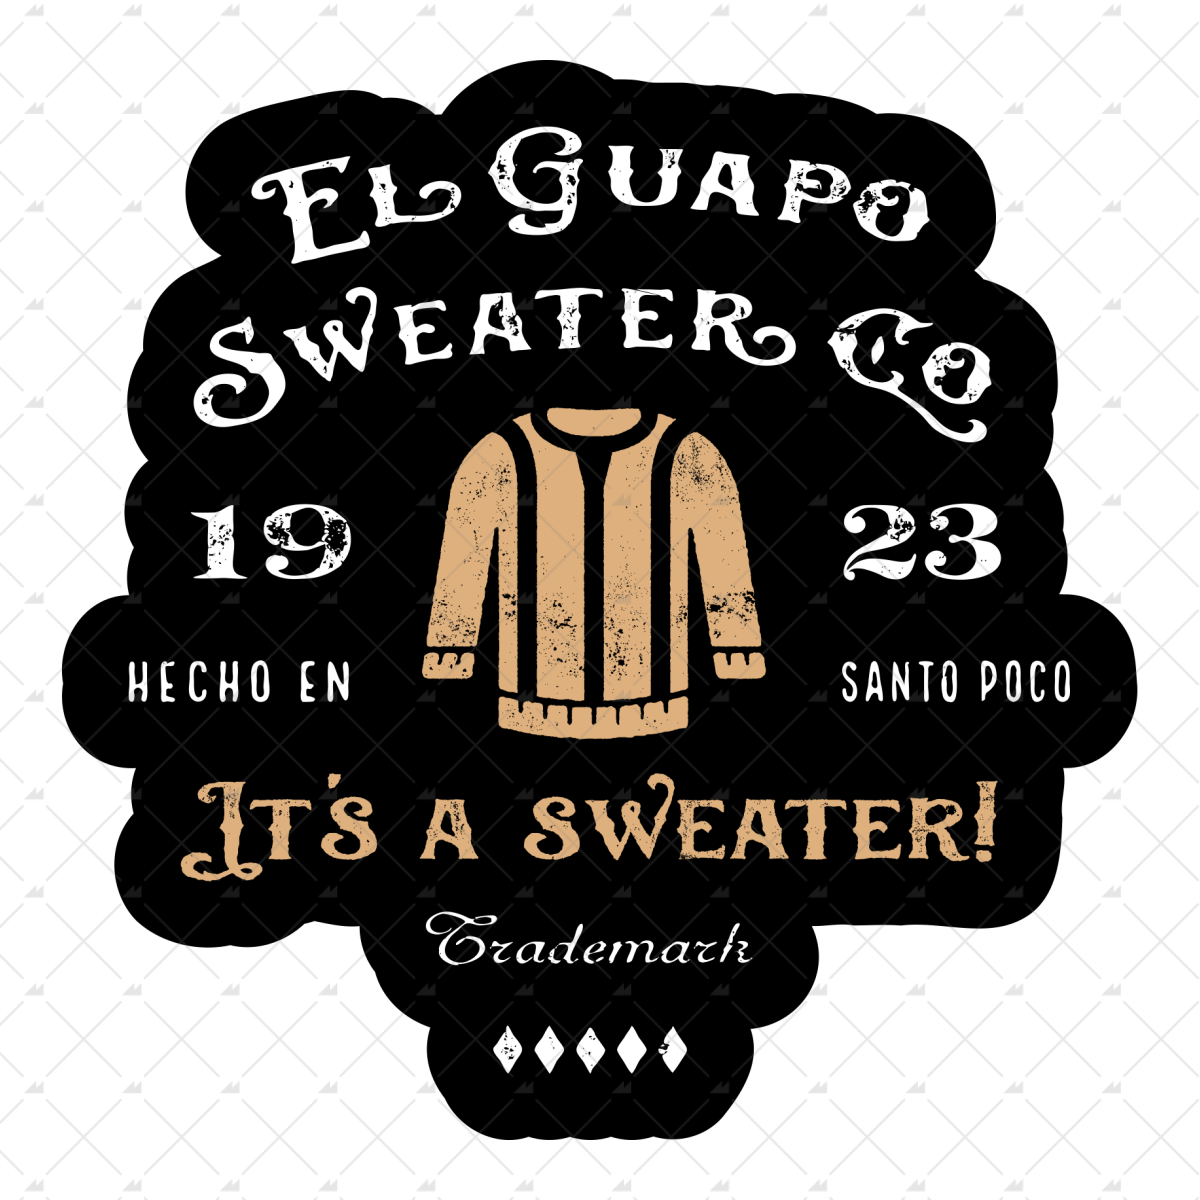 El Guapo Sweater Co. - Sticker